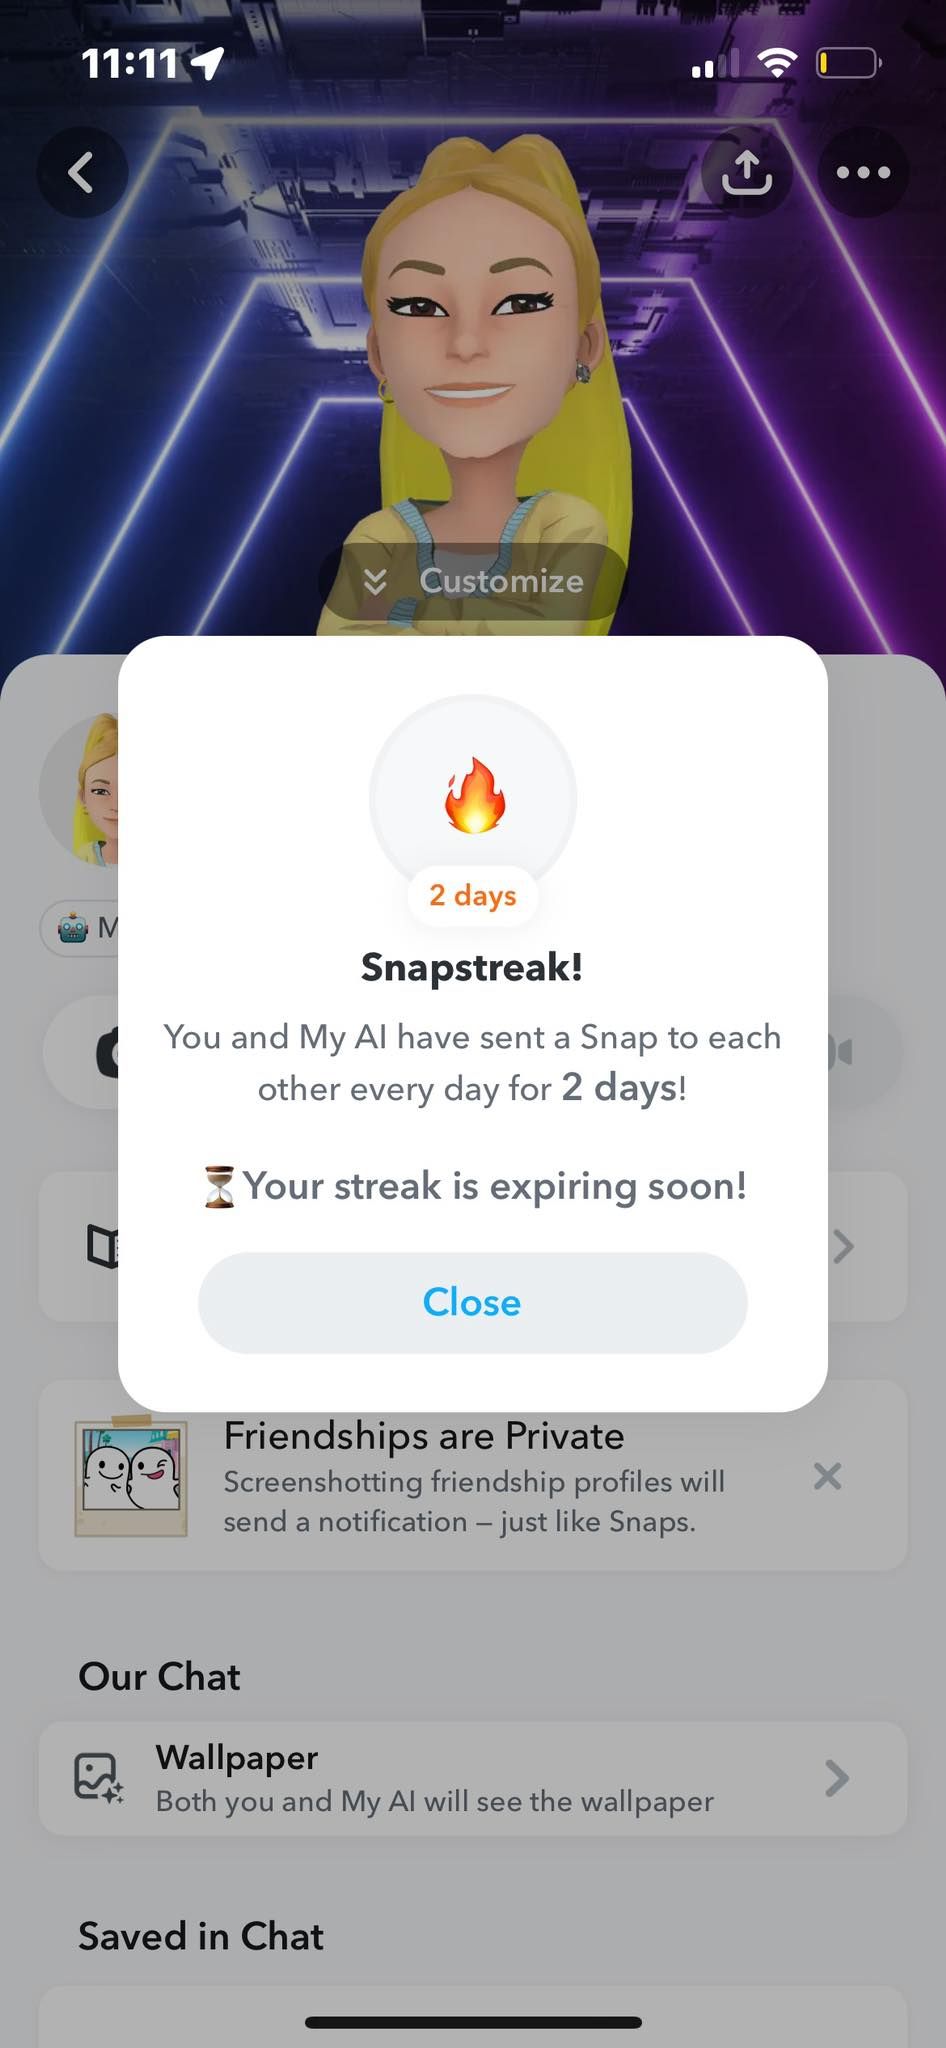 Snapstreak 2 Days Fire Emoji With My AI